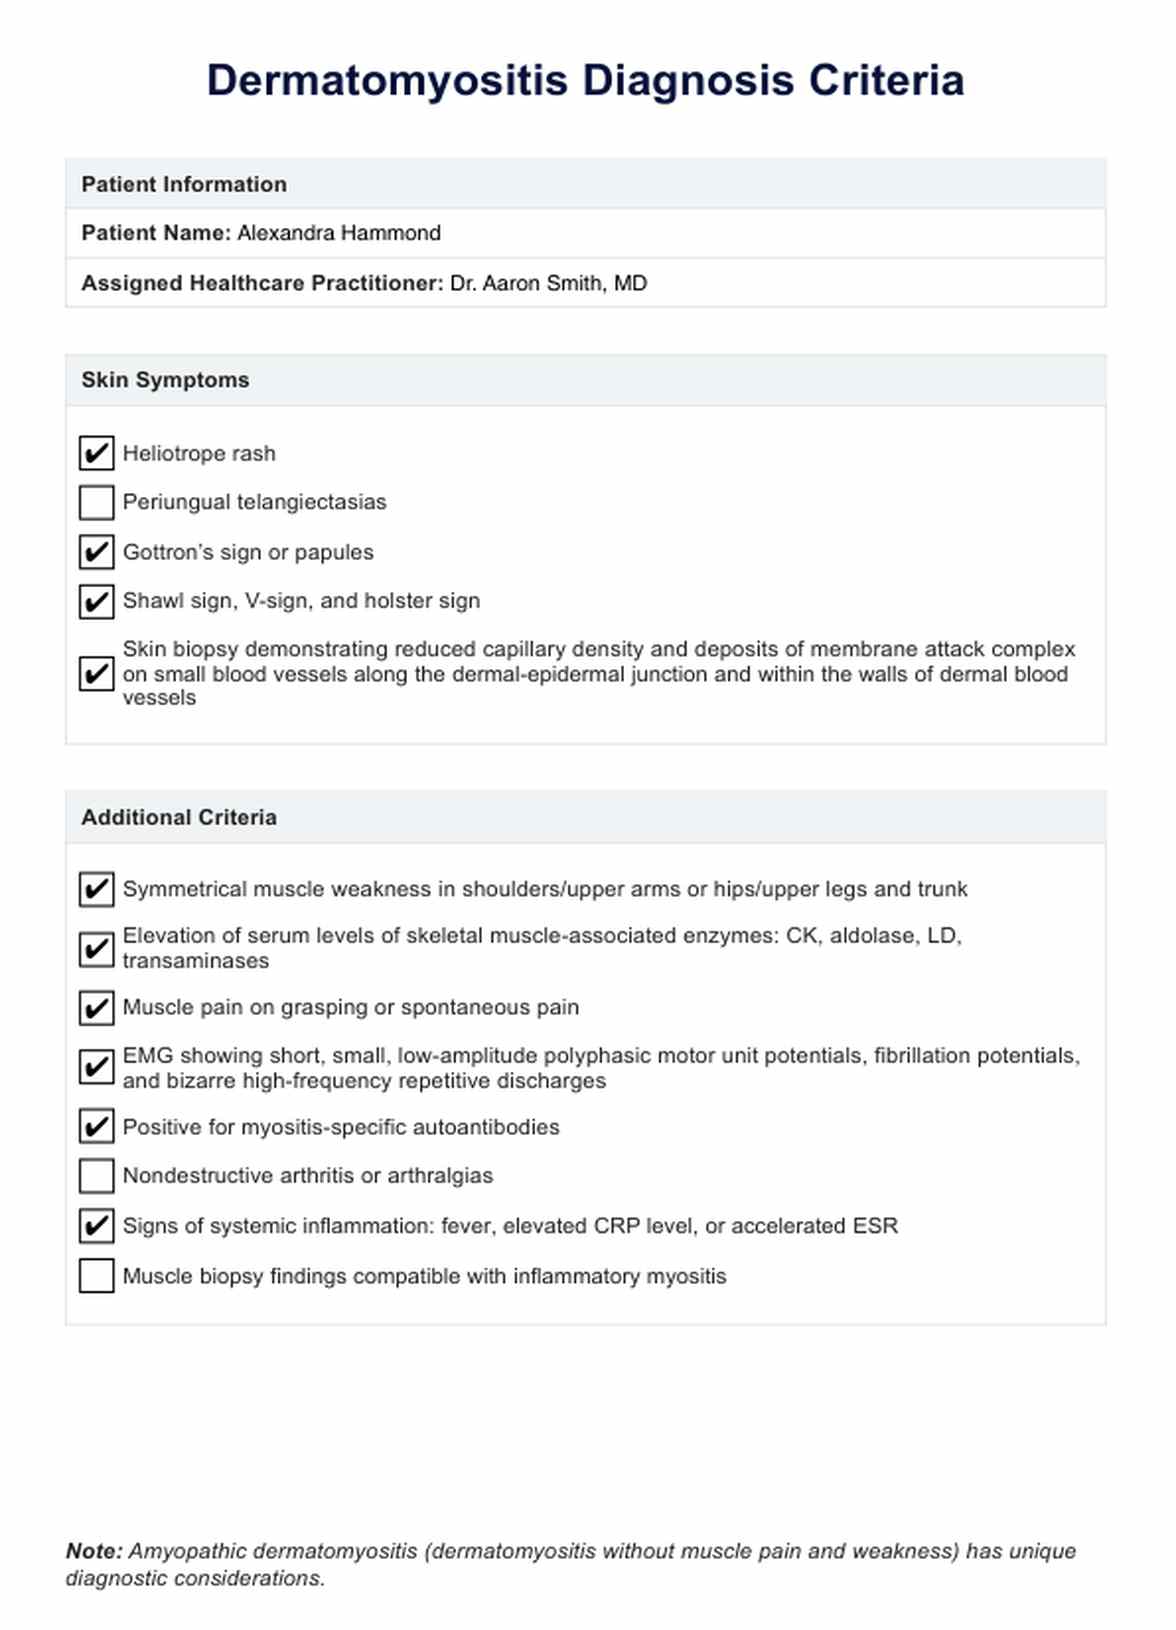 Dermatomyositis Diagnosis Criteria PDF Example